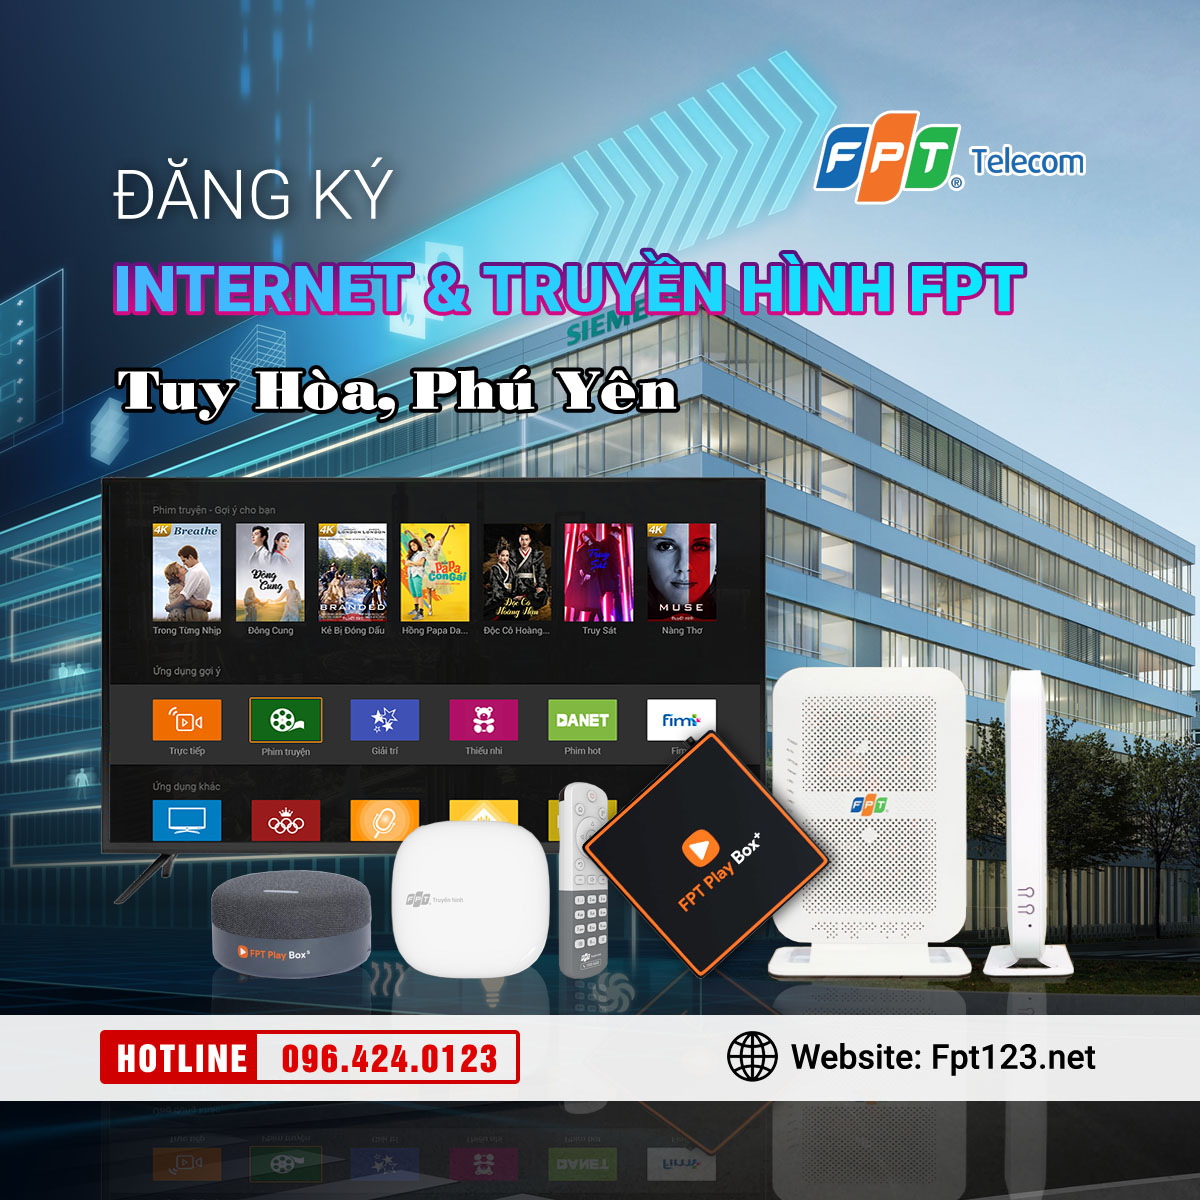 Đăng ký internet và truyền hình FPT Tuy Hoà, Phú Yên